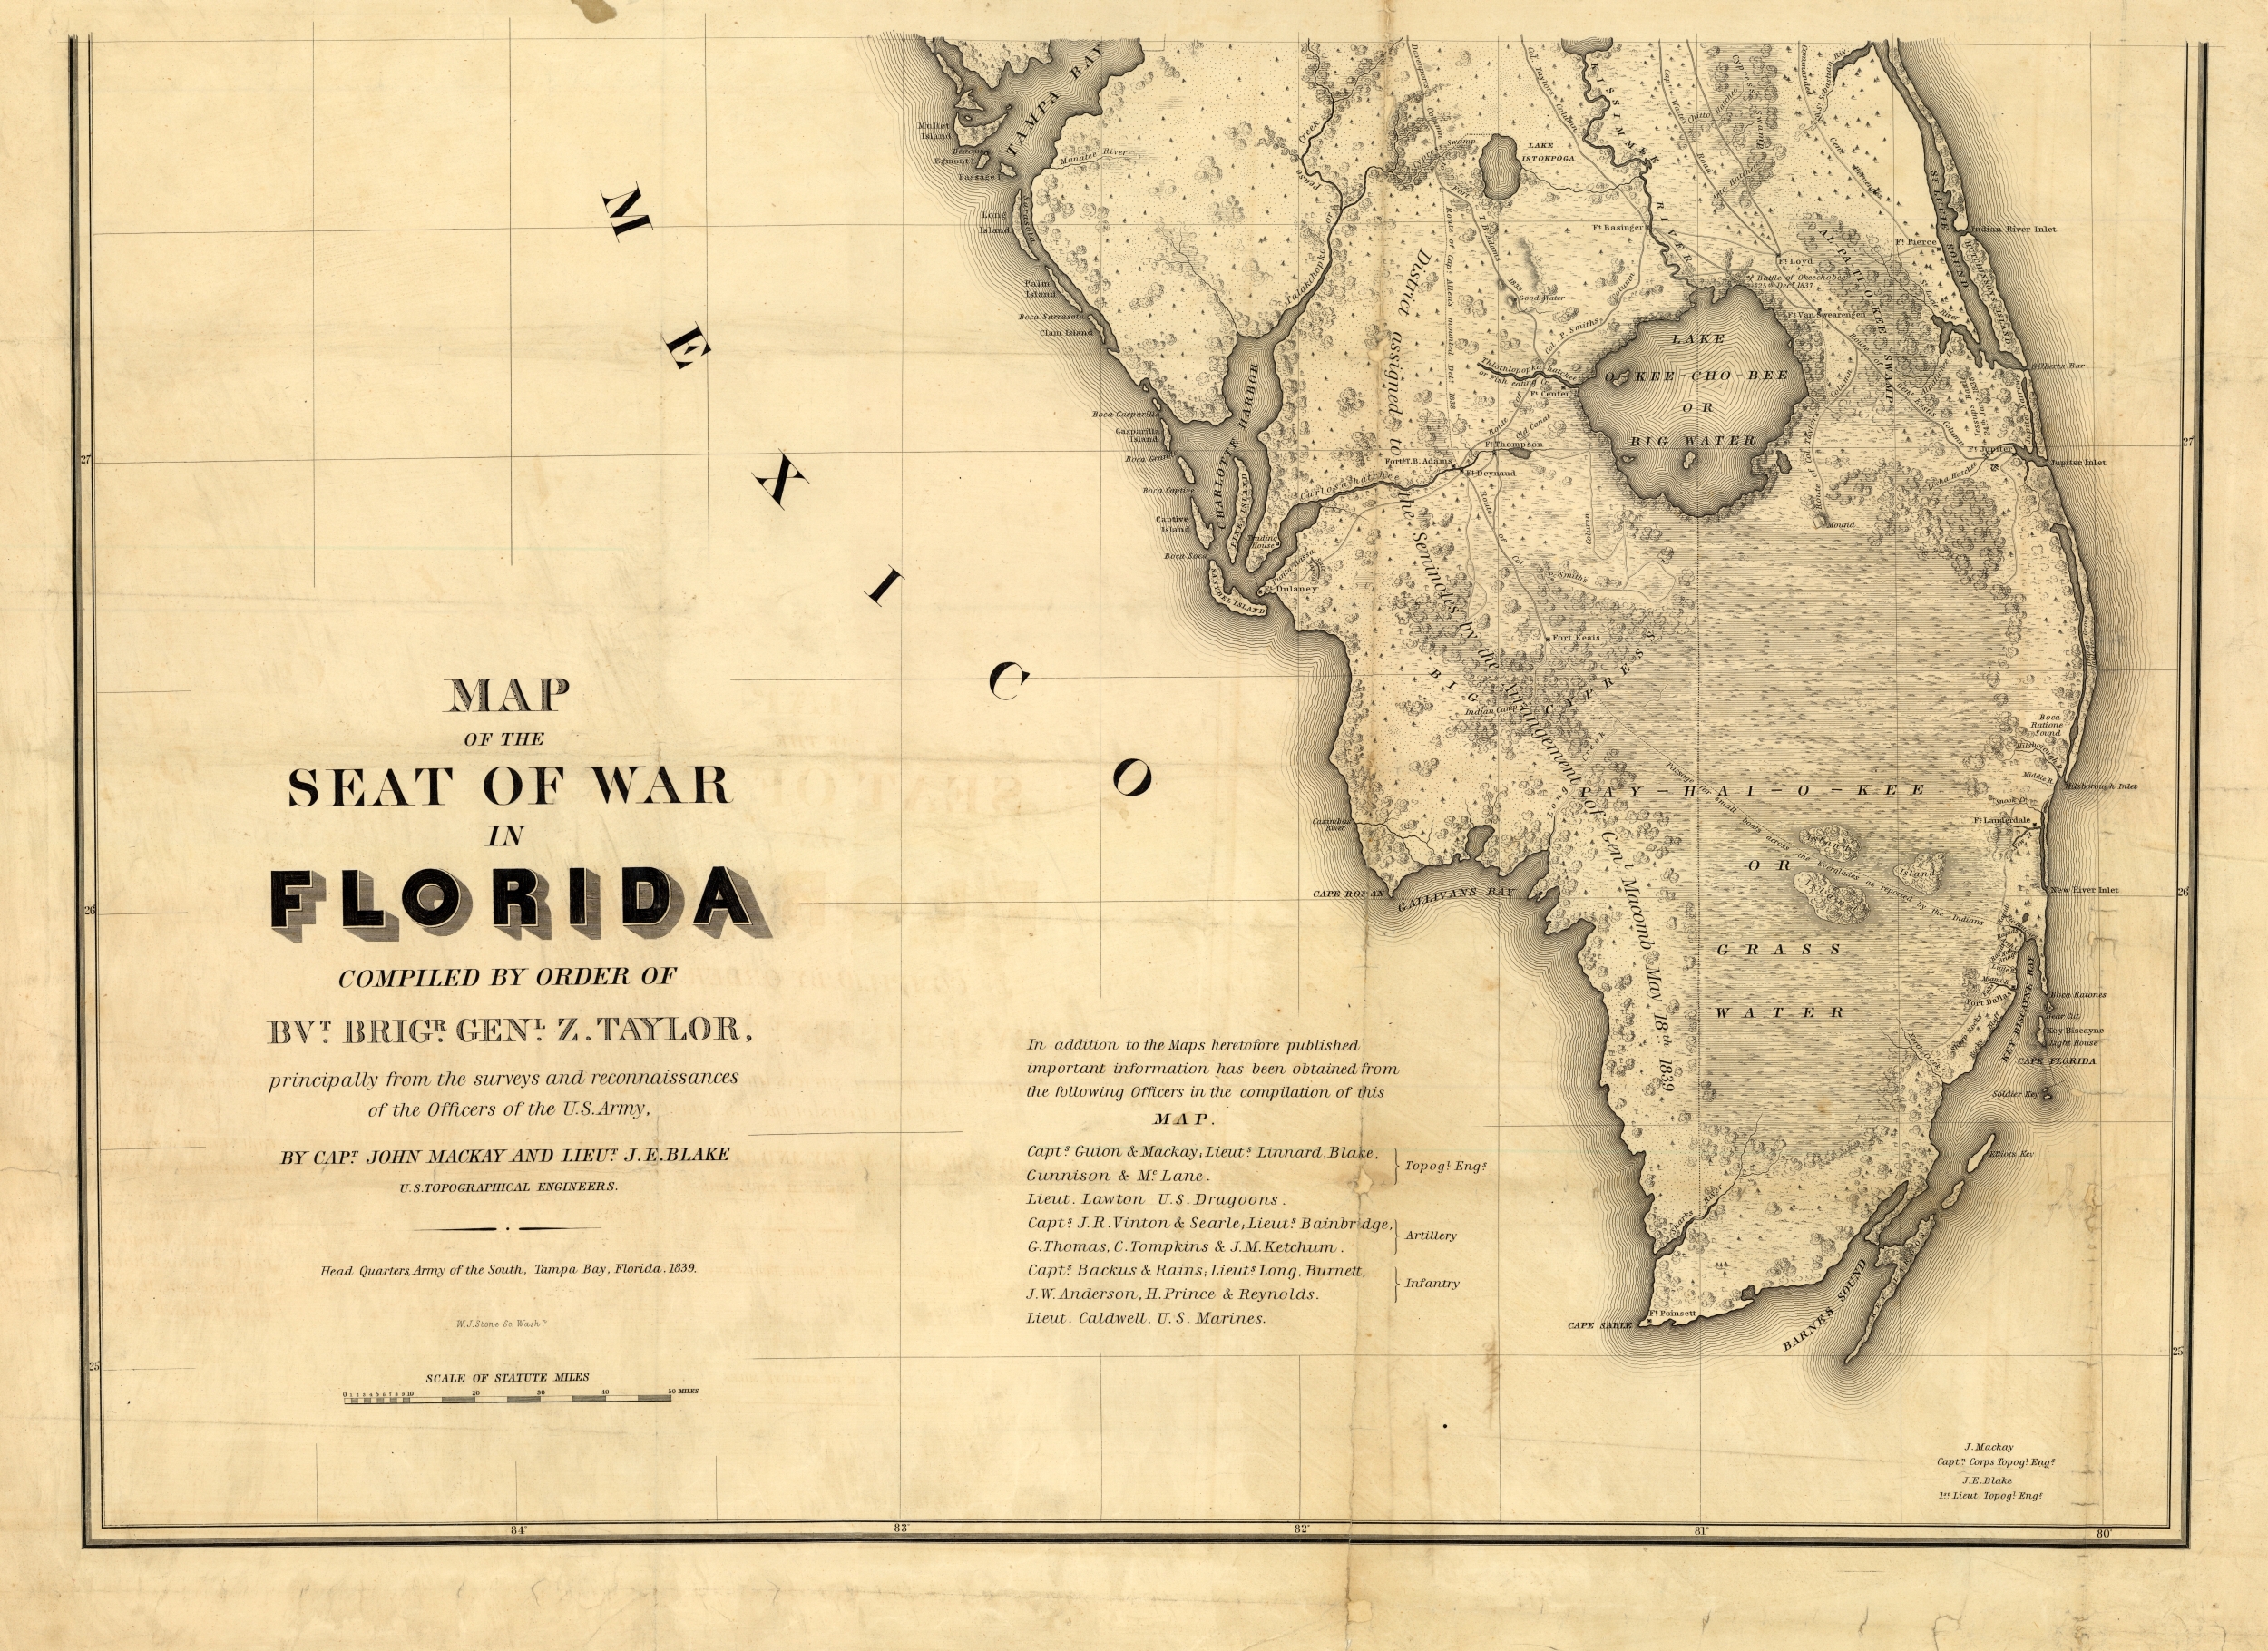 Mackay & Blake's Florida Seat of War, 1839